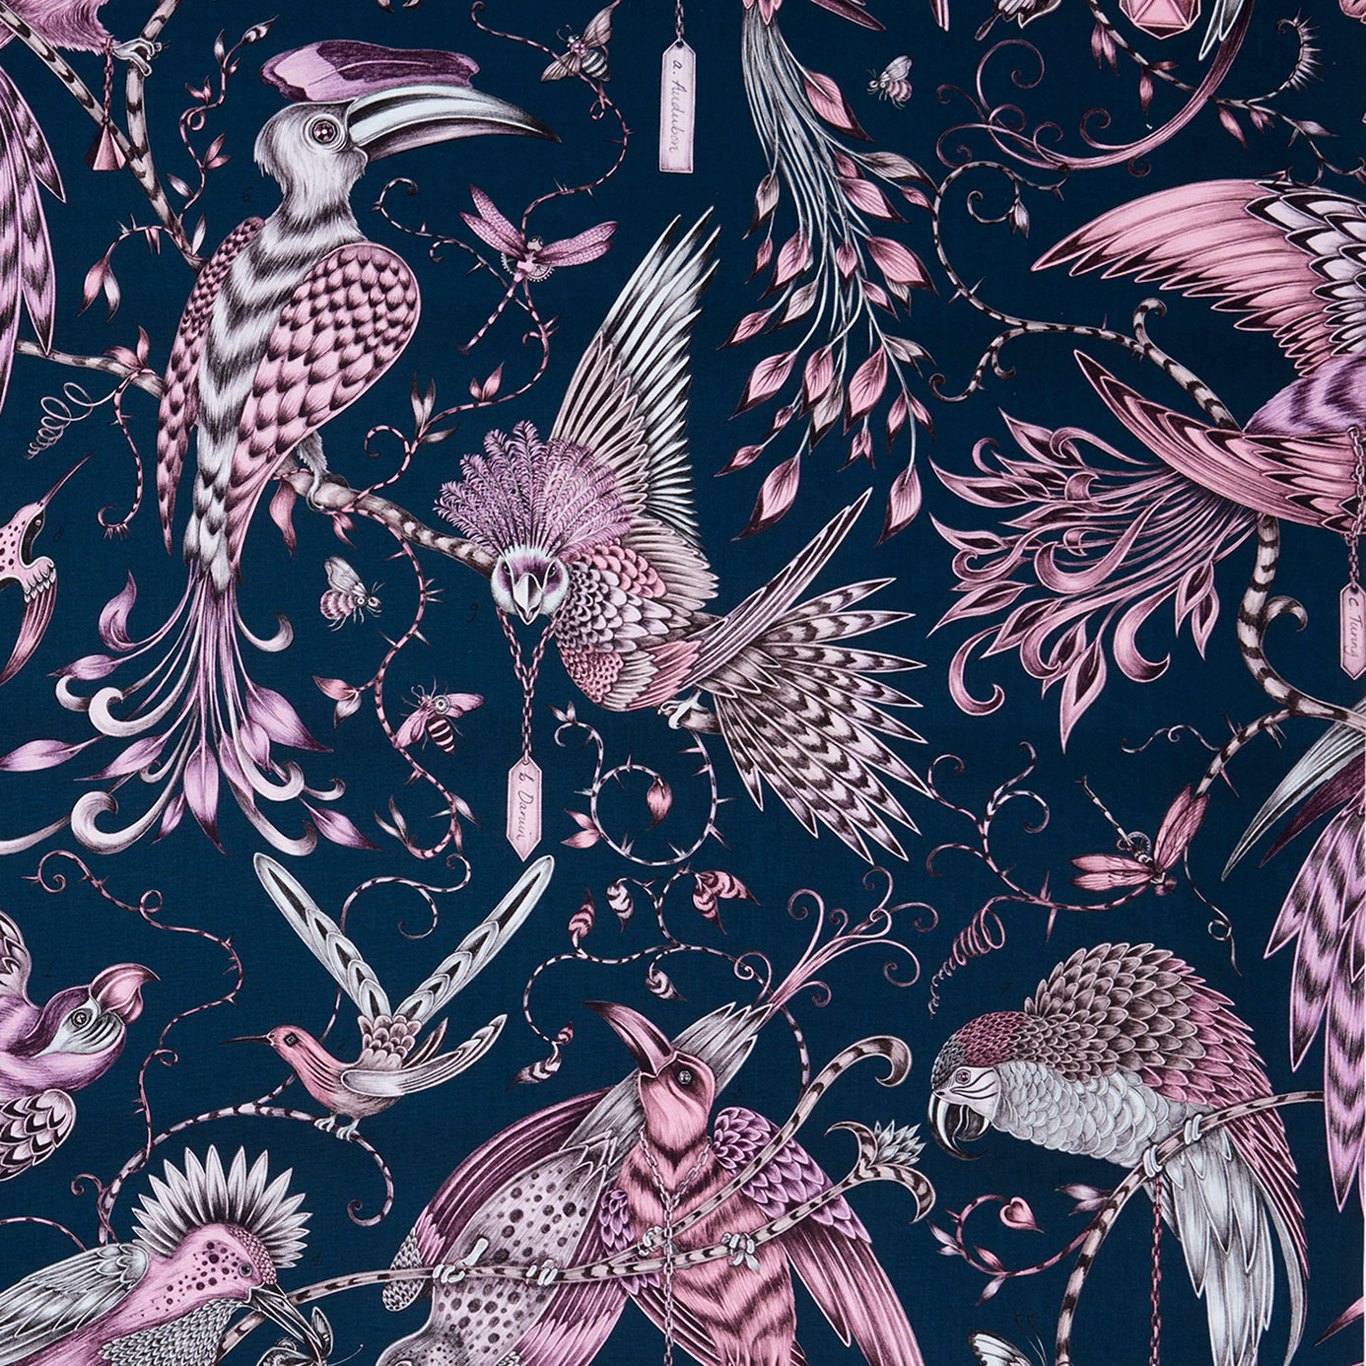 Audubon Pink Fabric by CNC